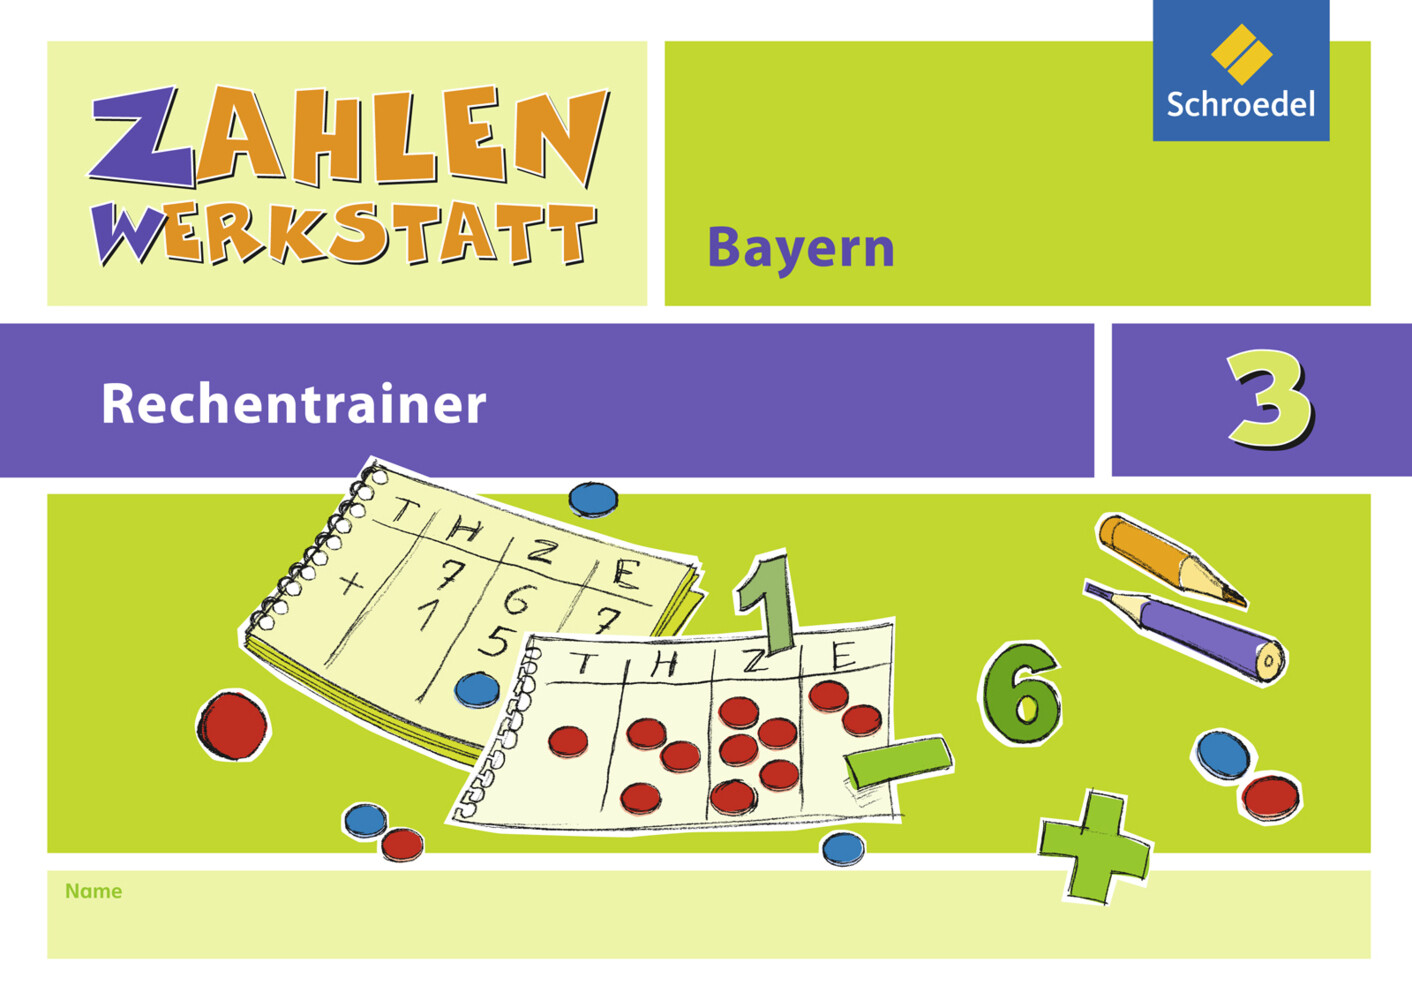 Zahlenwerkstatt - Rechentrainer 3. Bayern von Schroedel Verlag GmbH